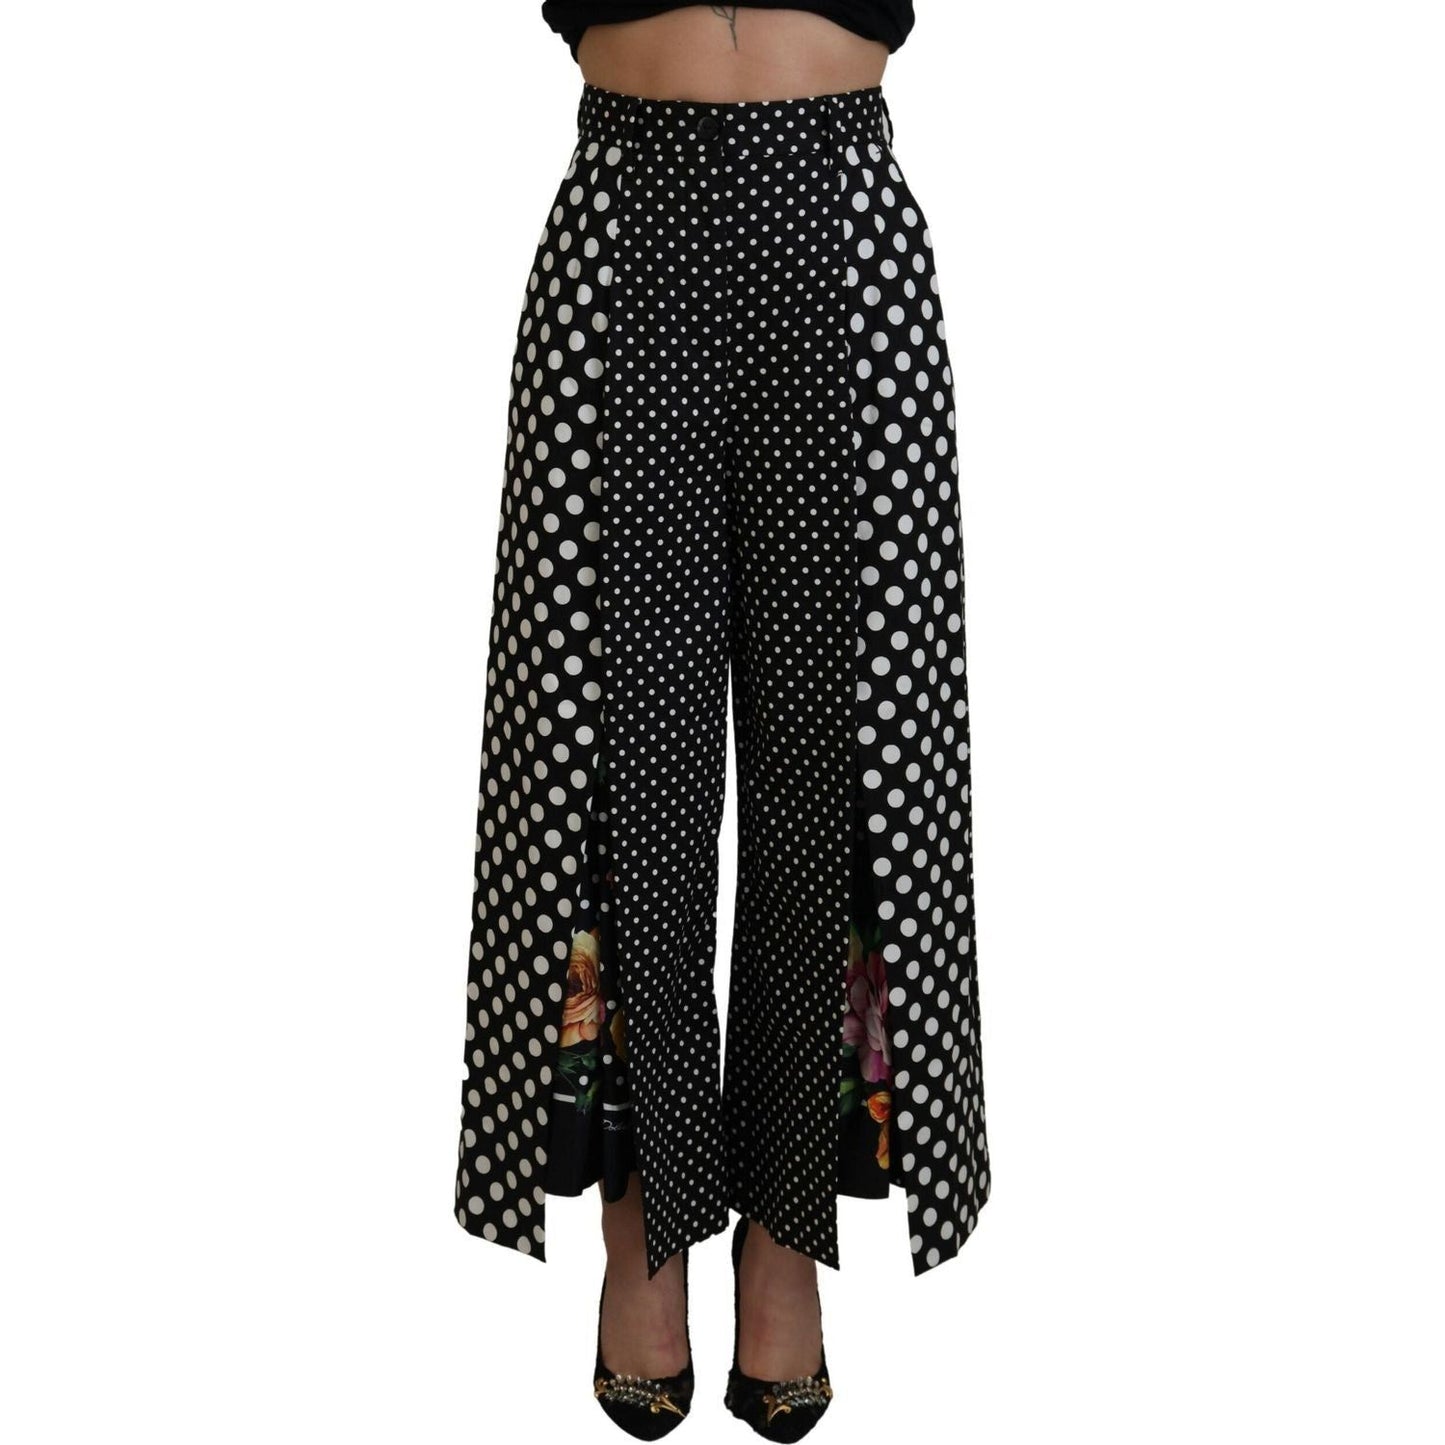 Dolce & Gabbana Elegant High-Waist Polka Dot Pants multicolor-polka-dots-high-waist-pants